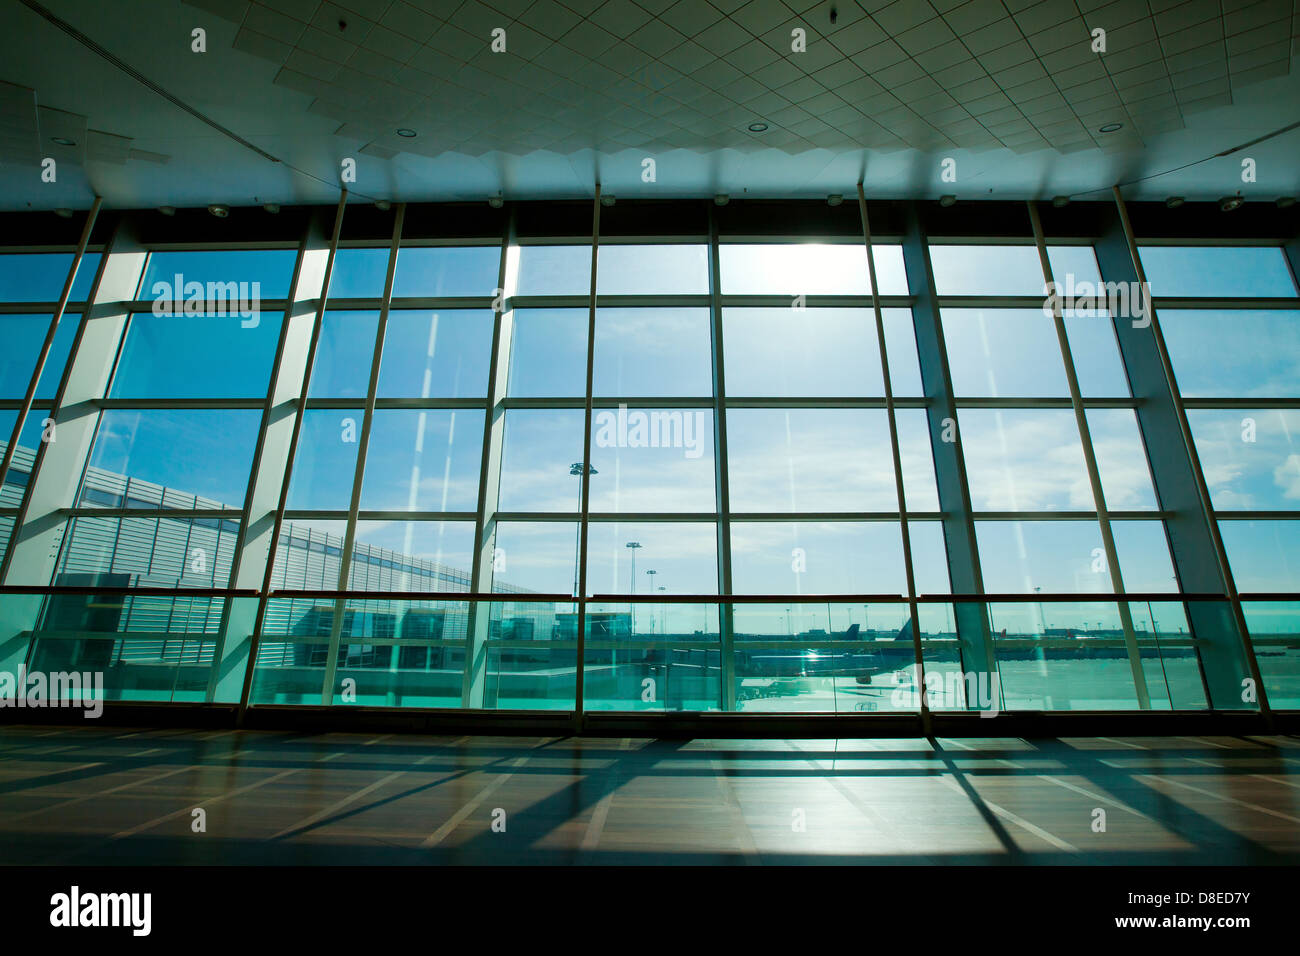 Mur de verre dans l'aéroport, résumé business interior Banque D'Images